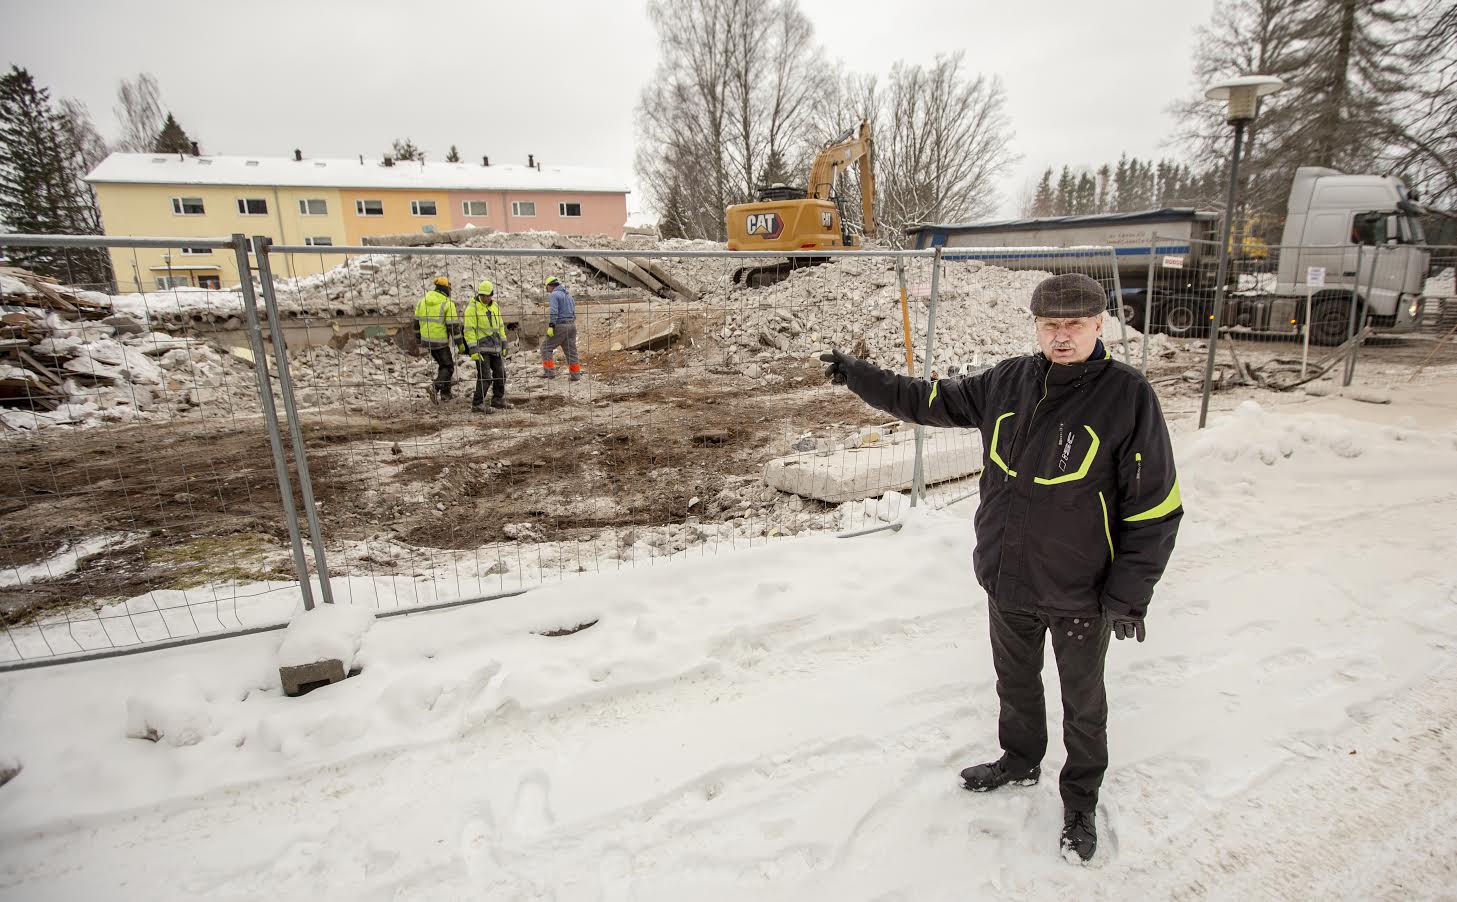 Võrumaa kutsehariduskeskuse direktor Tanel Linnus avaldab heameelt peagi rajatava spordiväljaku ning teiste uuenduste üle. Foto: AIGAR NAGEL